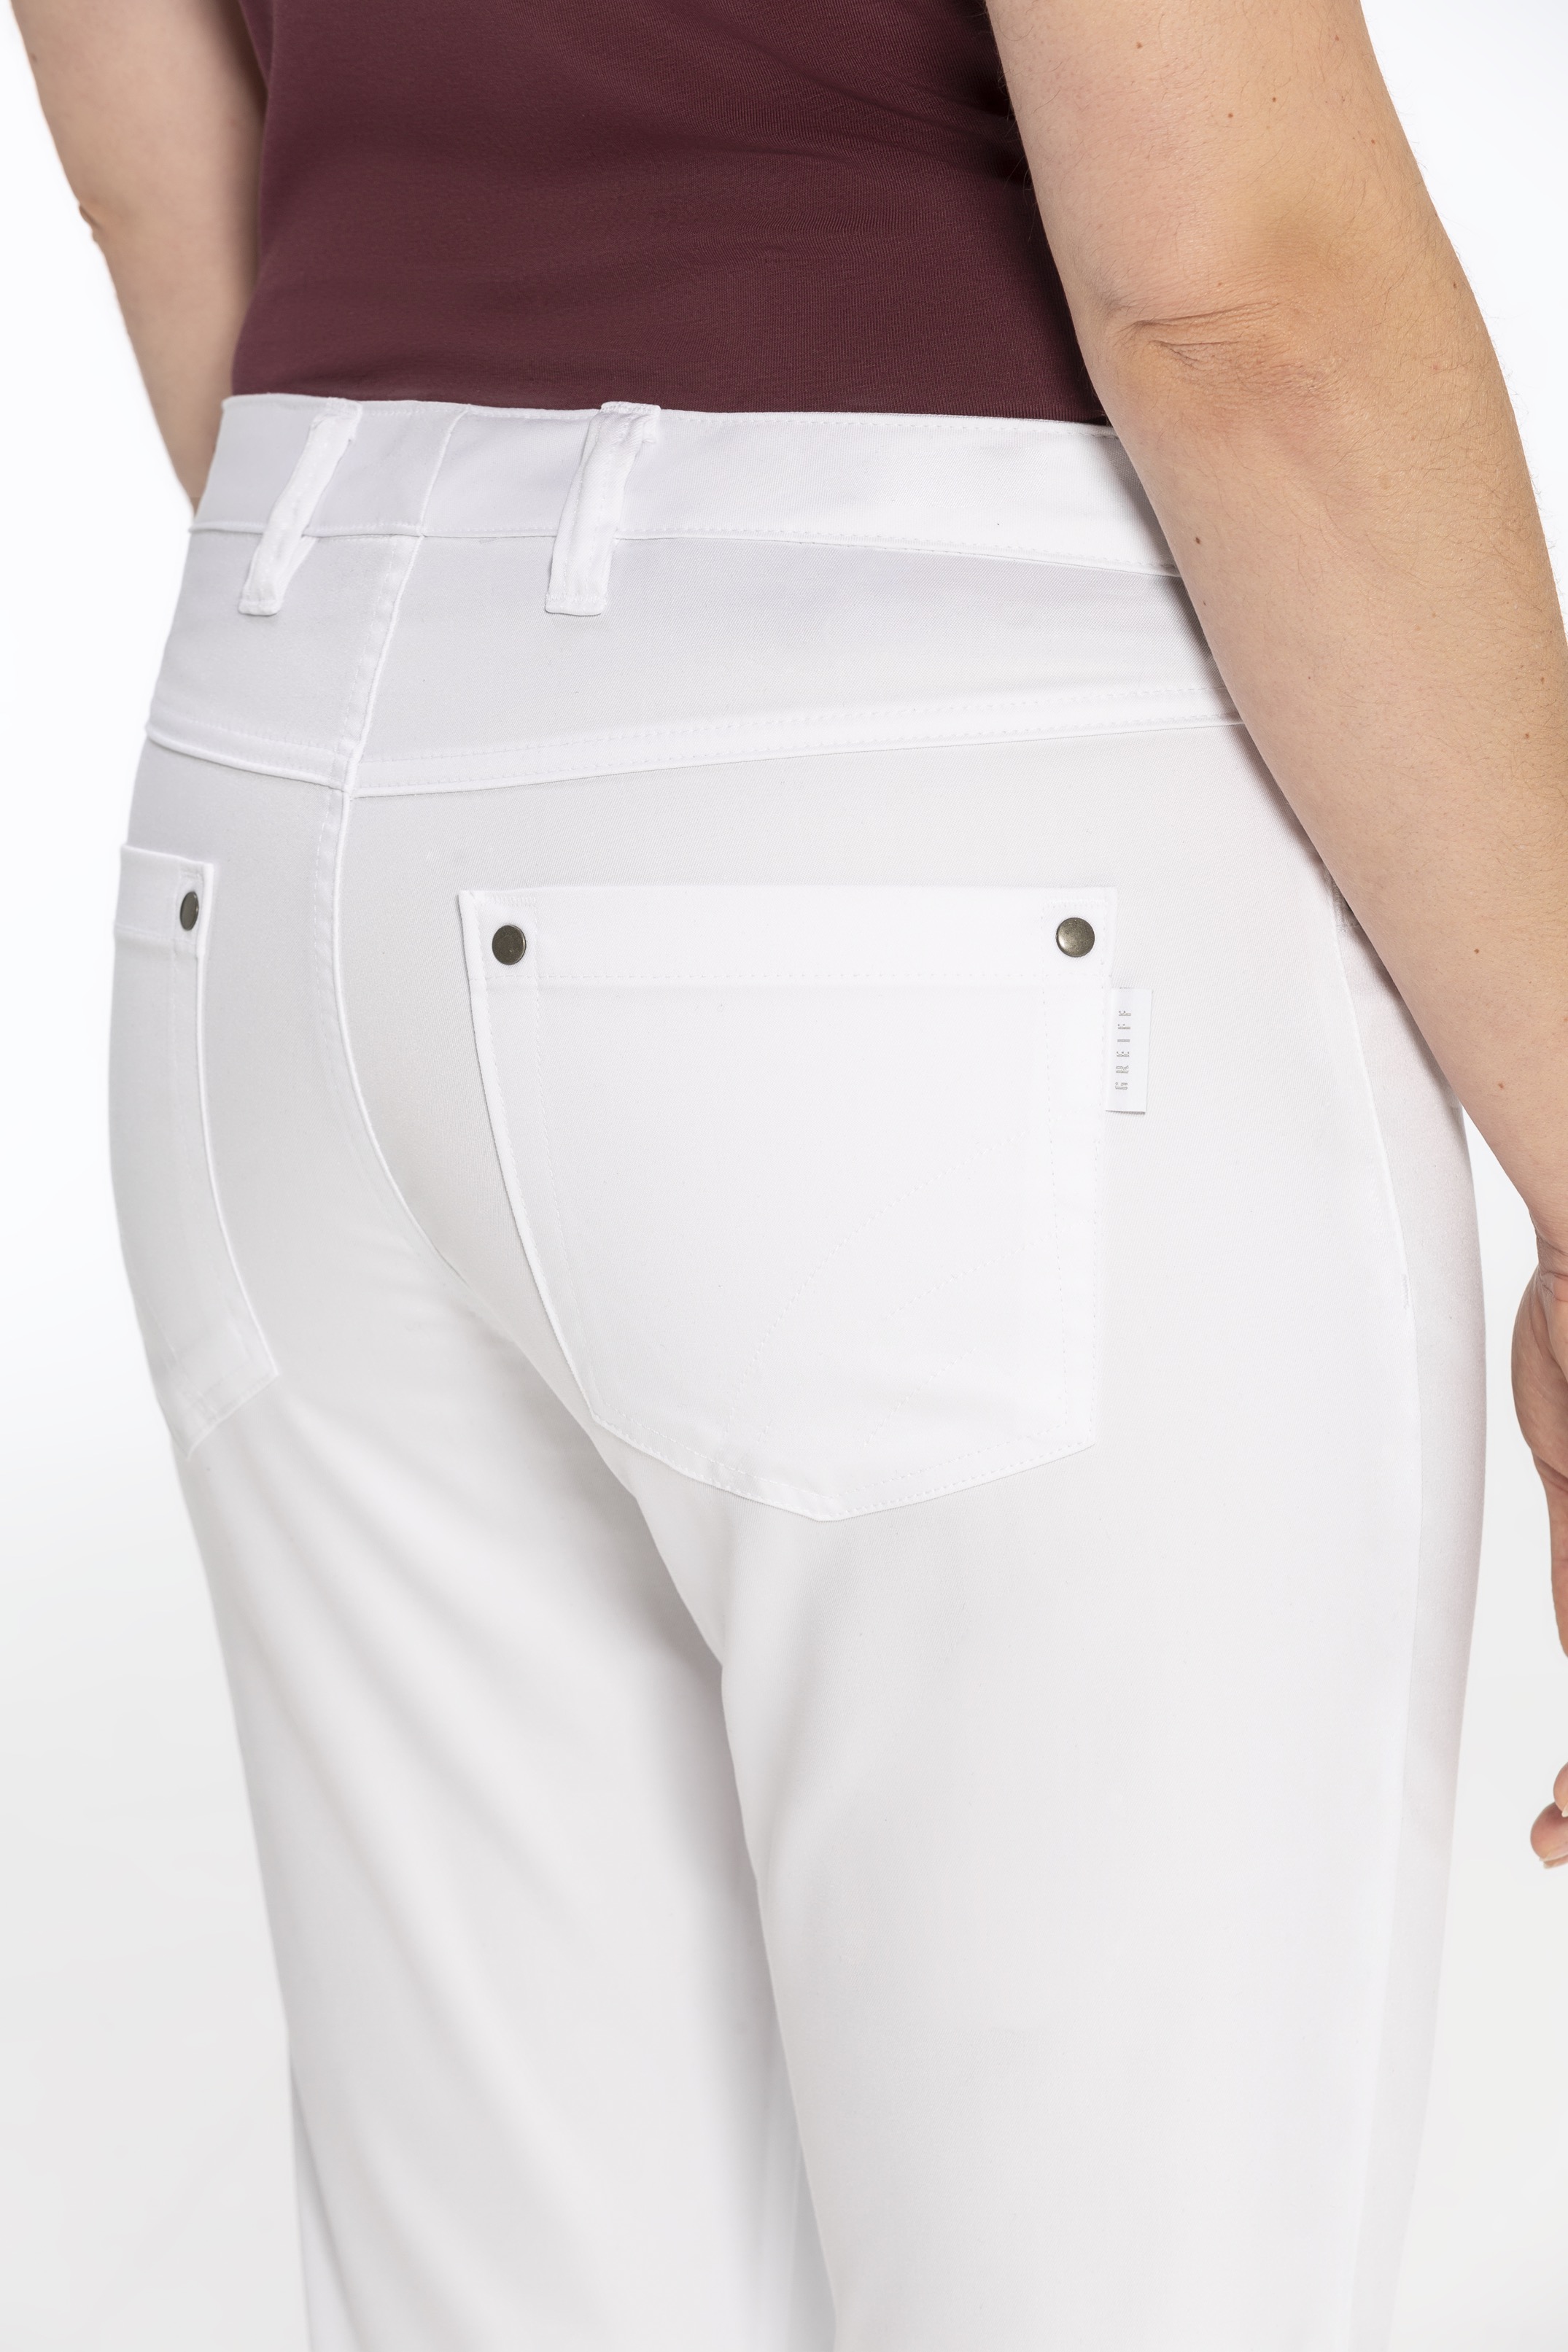 Damen-Hose "Five Pocket" Regular Fit 